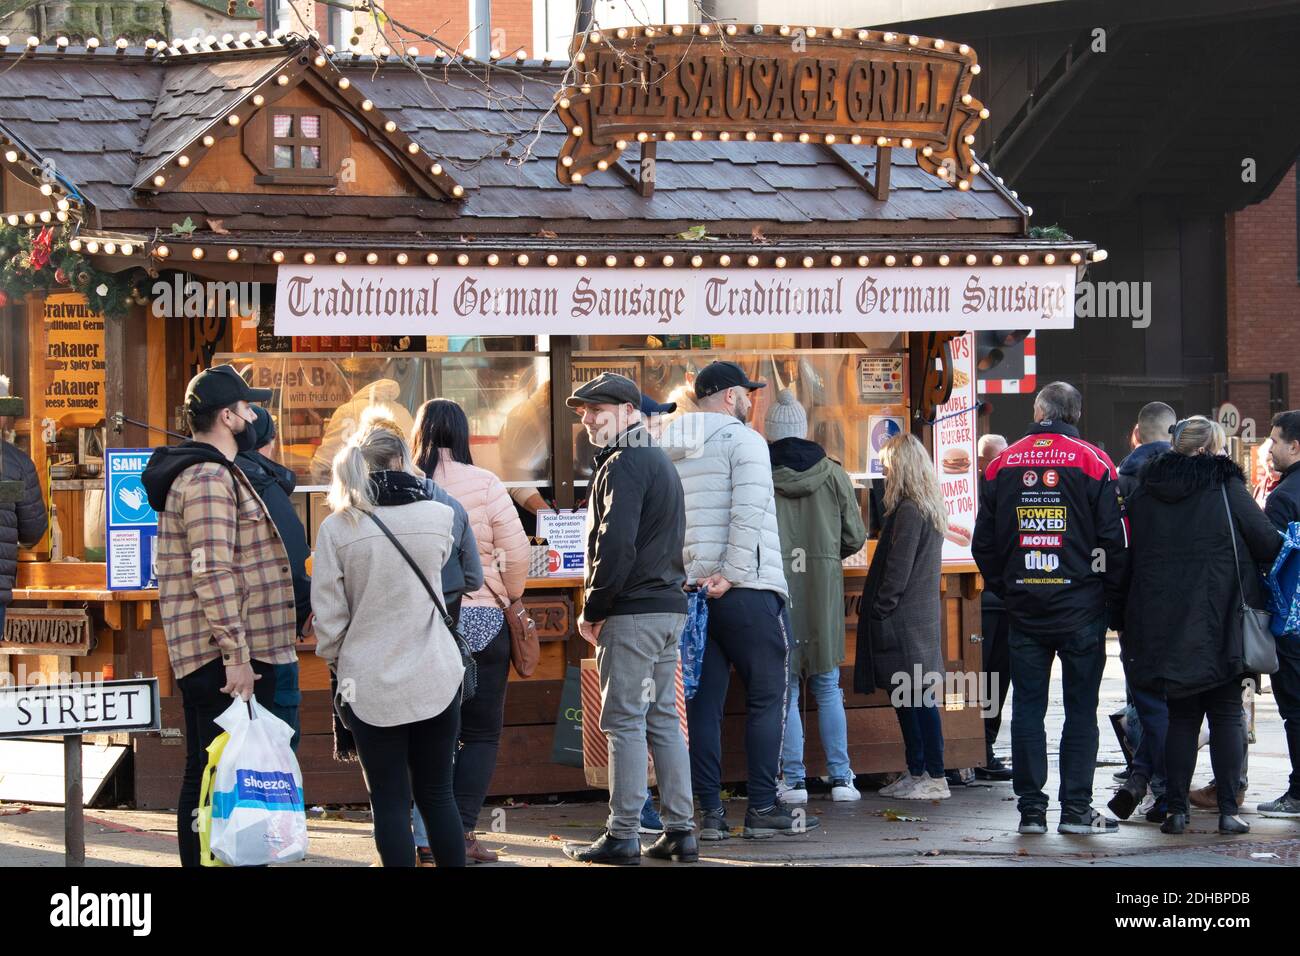 Am ersten Dezemberwochenende während der Coronavirus-Pandemie stehen Menschen an einem deutschen Wurststand im Stadtzentrum Schlange. Normalerweise hat der Weihnachtsmarkt immer an diesem Wochenende stattgefunden, aber aufgrund von Coronavirus-Einschränkungen mit Lincoln in Tier 3 wurde der Markt gestrichen. Stockfoto